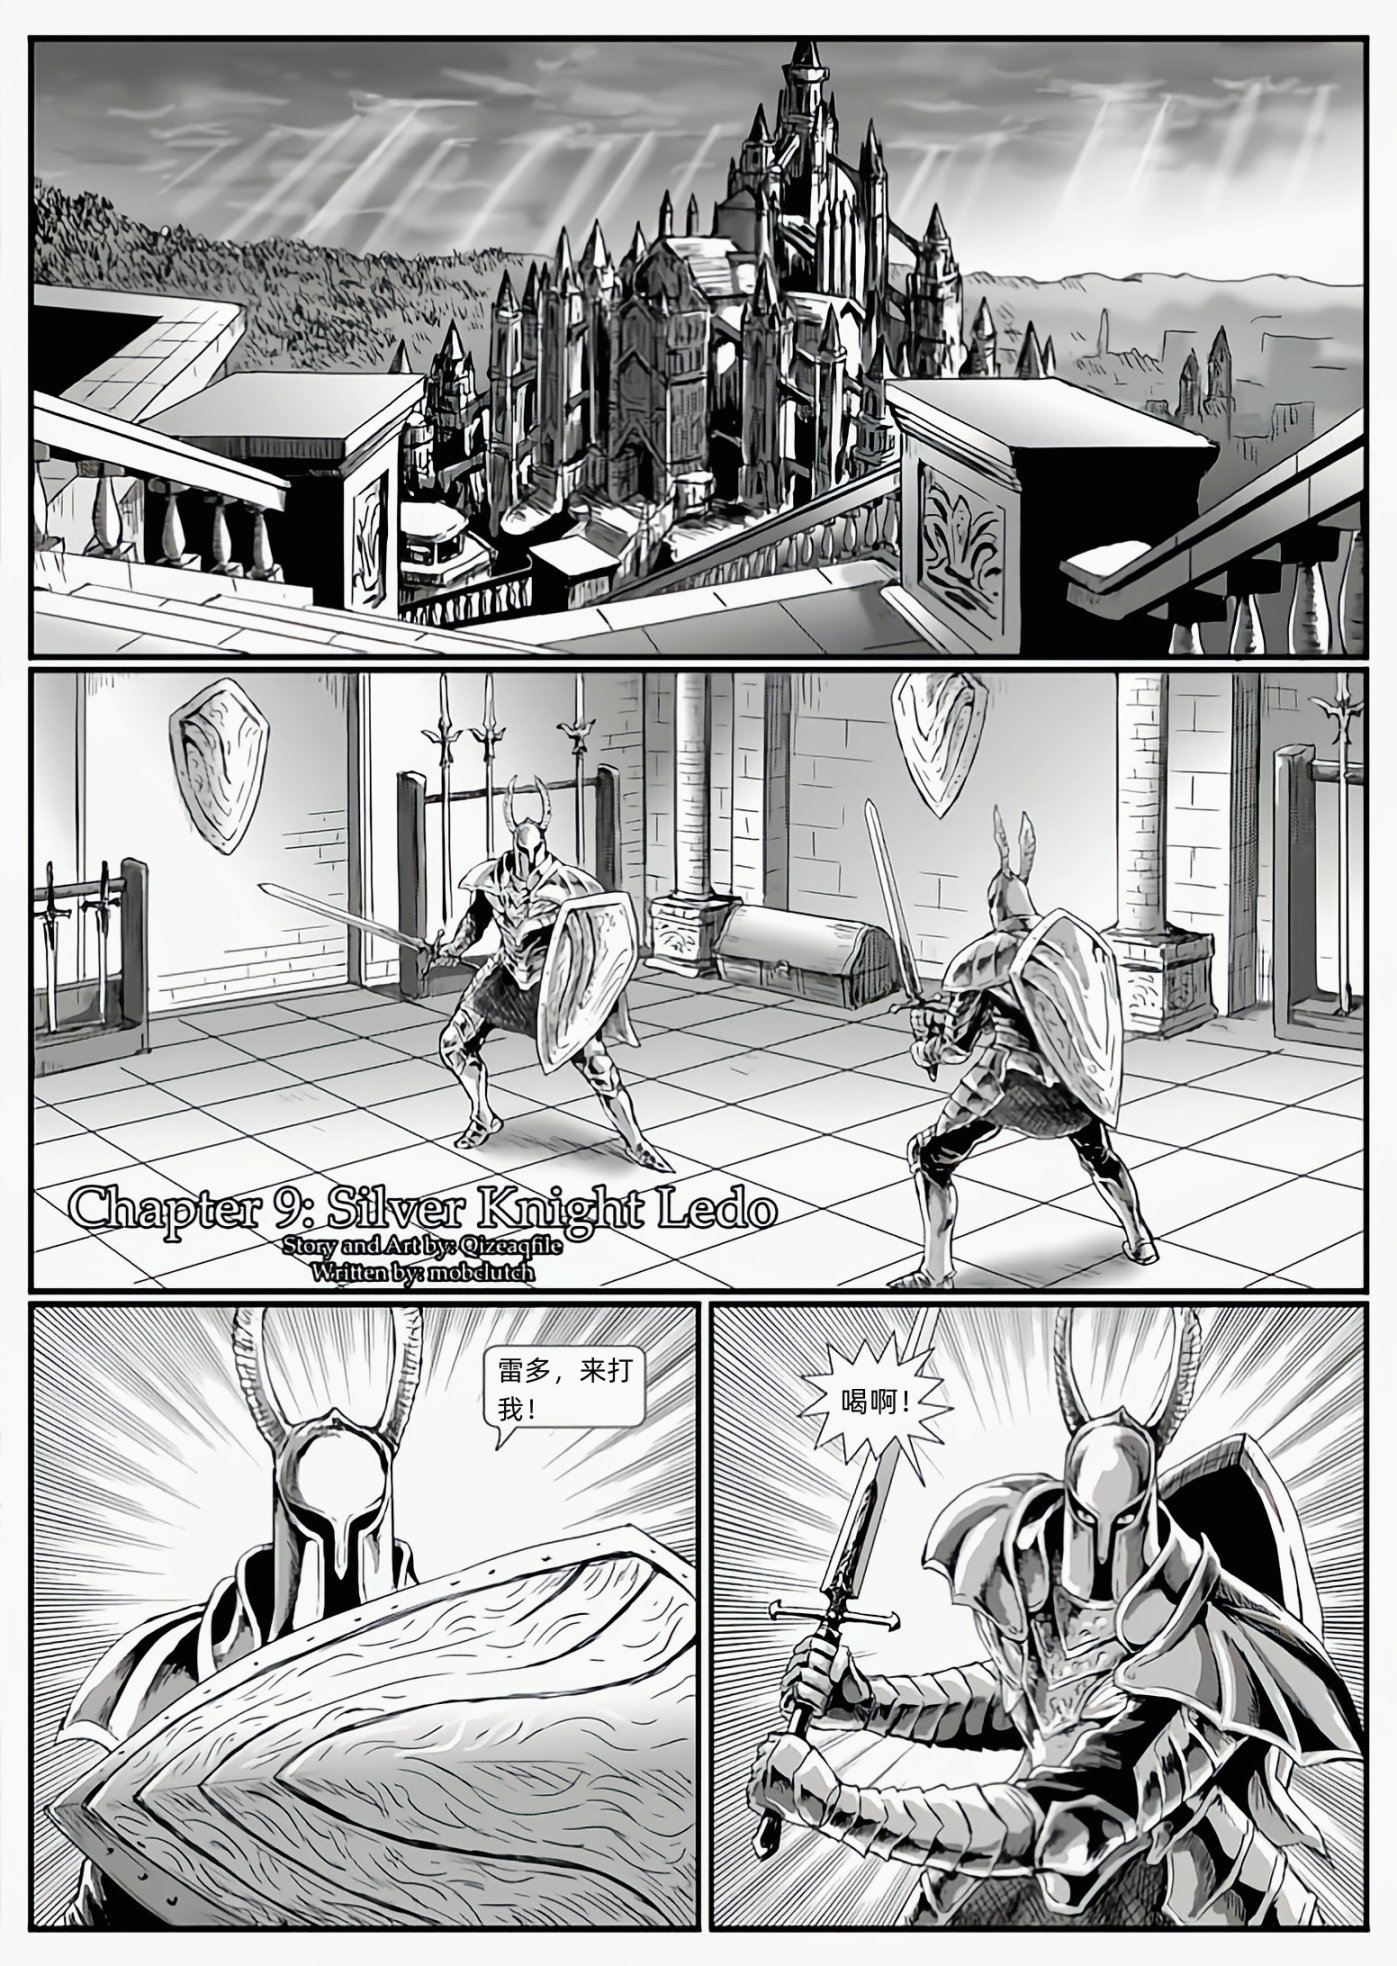 【漫畫】黑暗靈魂：獵龍戰爭（chap9銀騎士雷多-chap10堅石與大錘-第0張